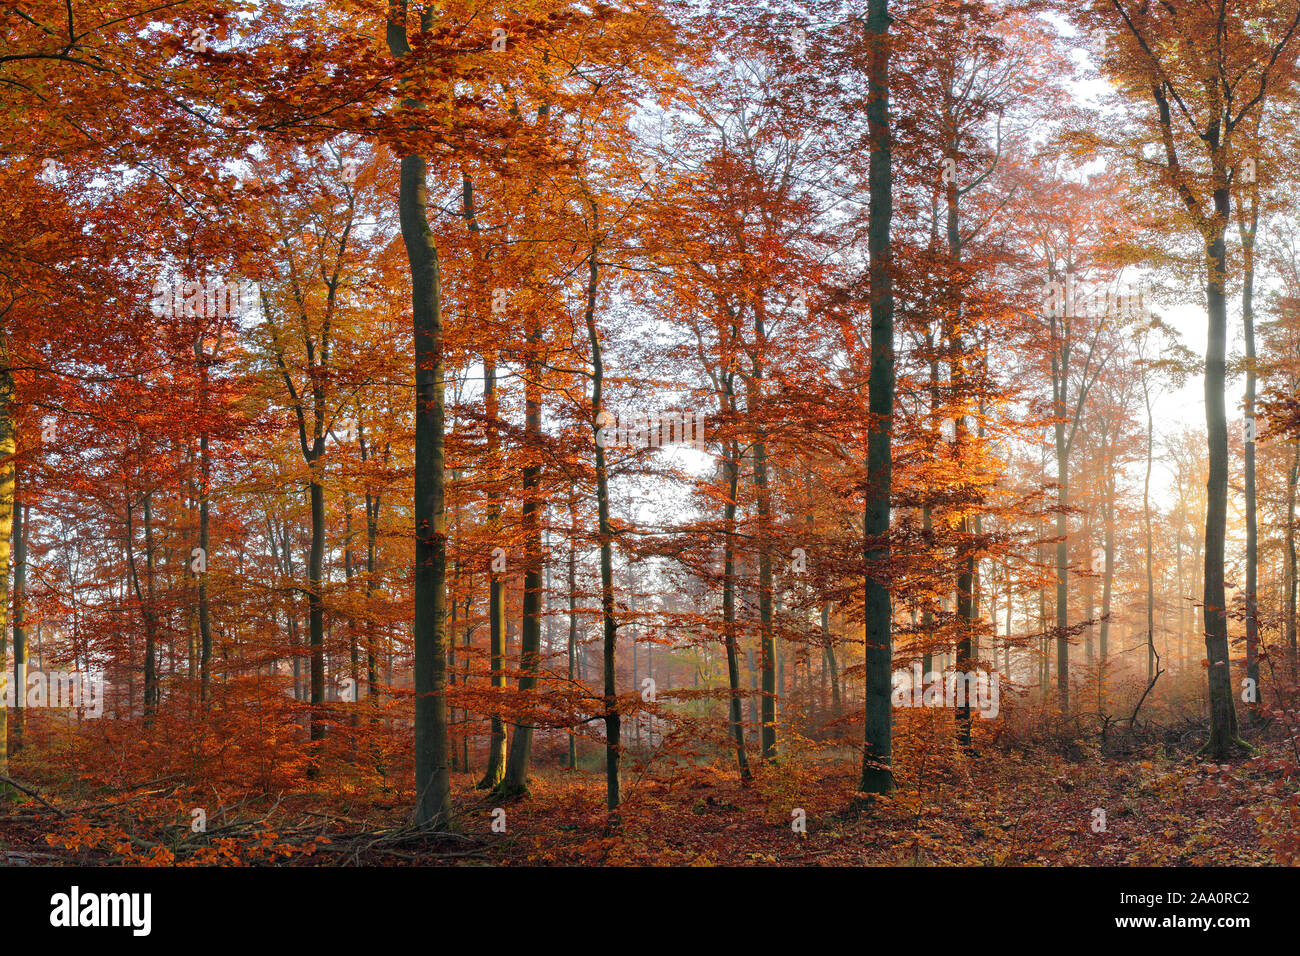 Herbstlich gefärbter Buchenwald, Morgenstimmung, Solms, Lahn-Dill Kreis, Hessen, Deutschland Stock Photo